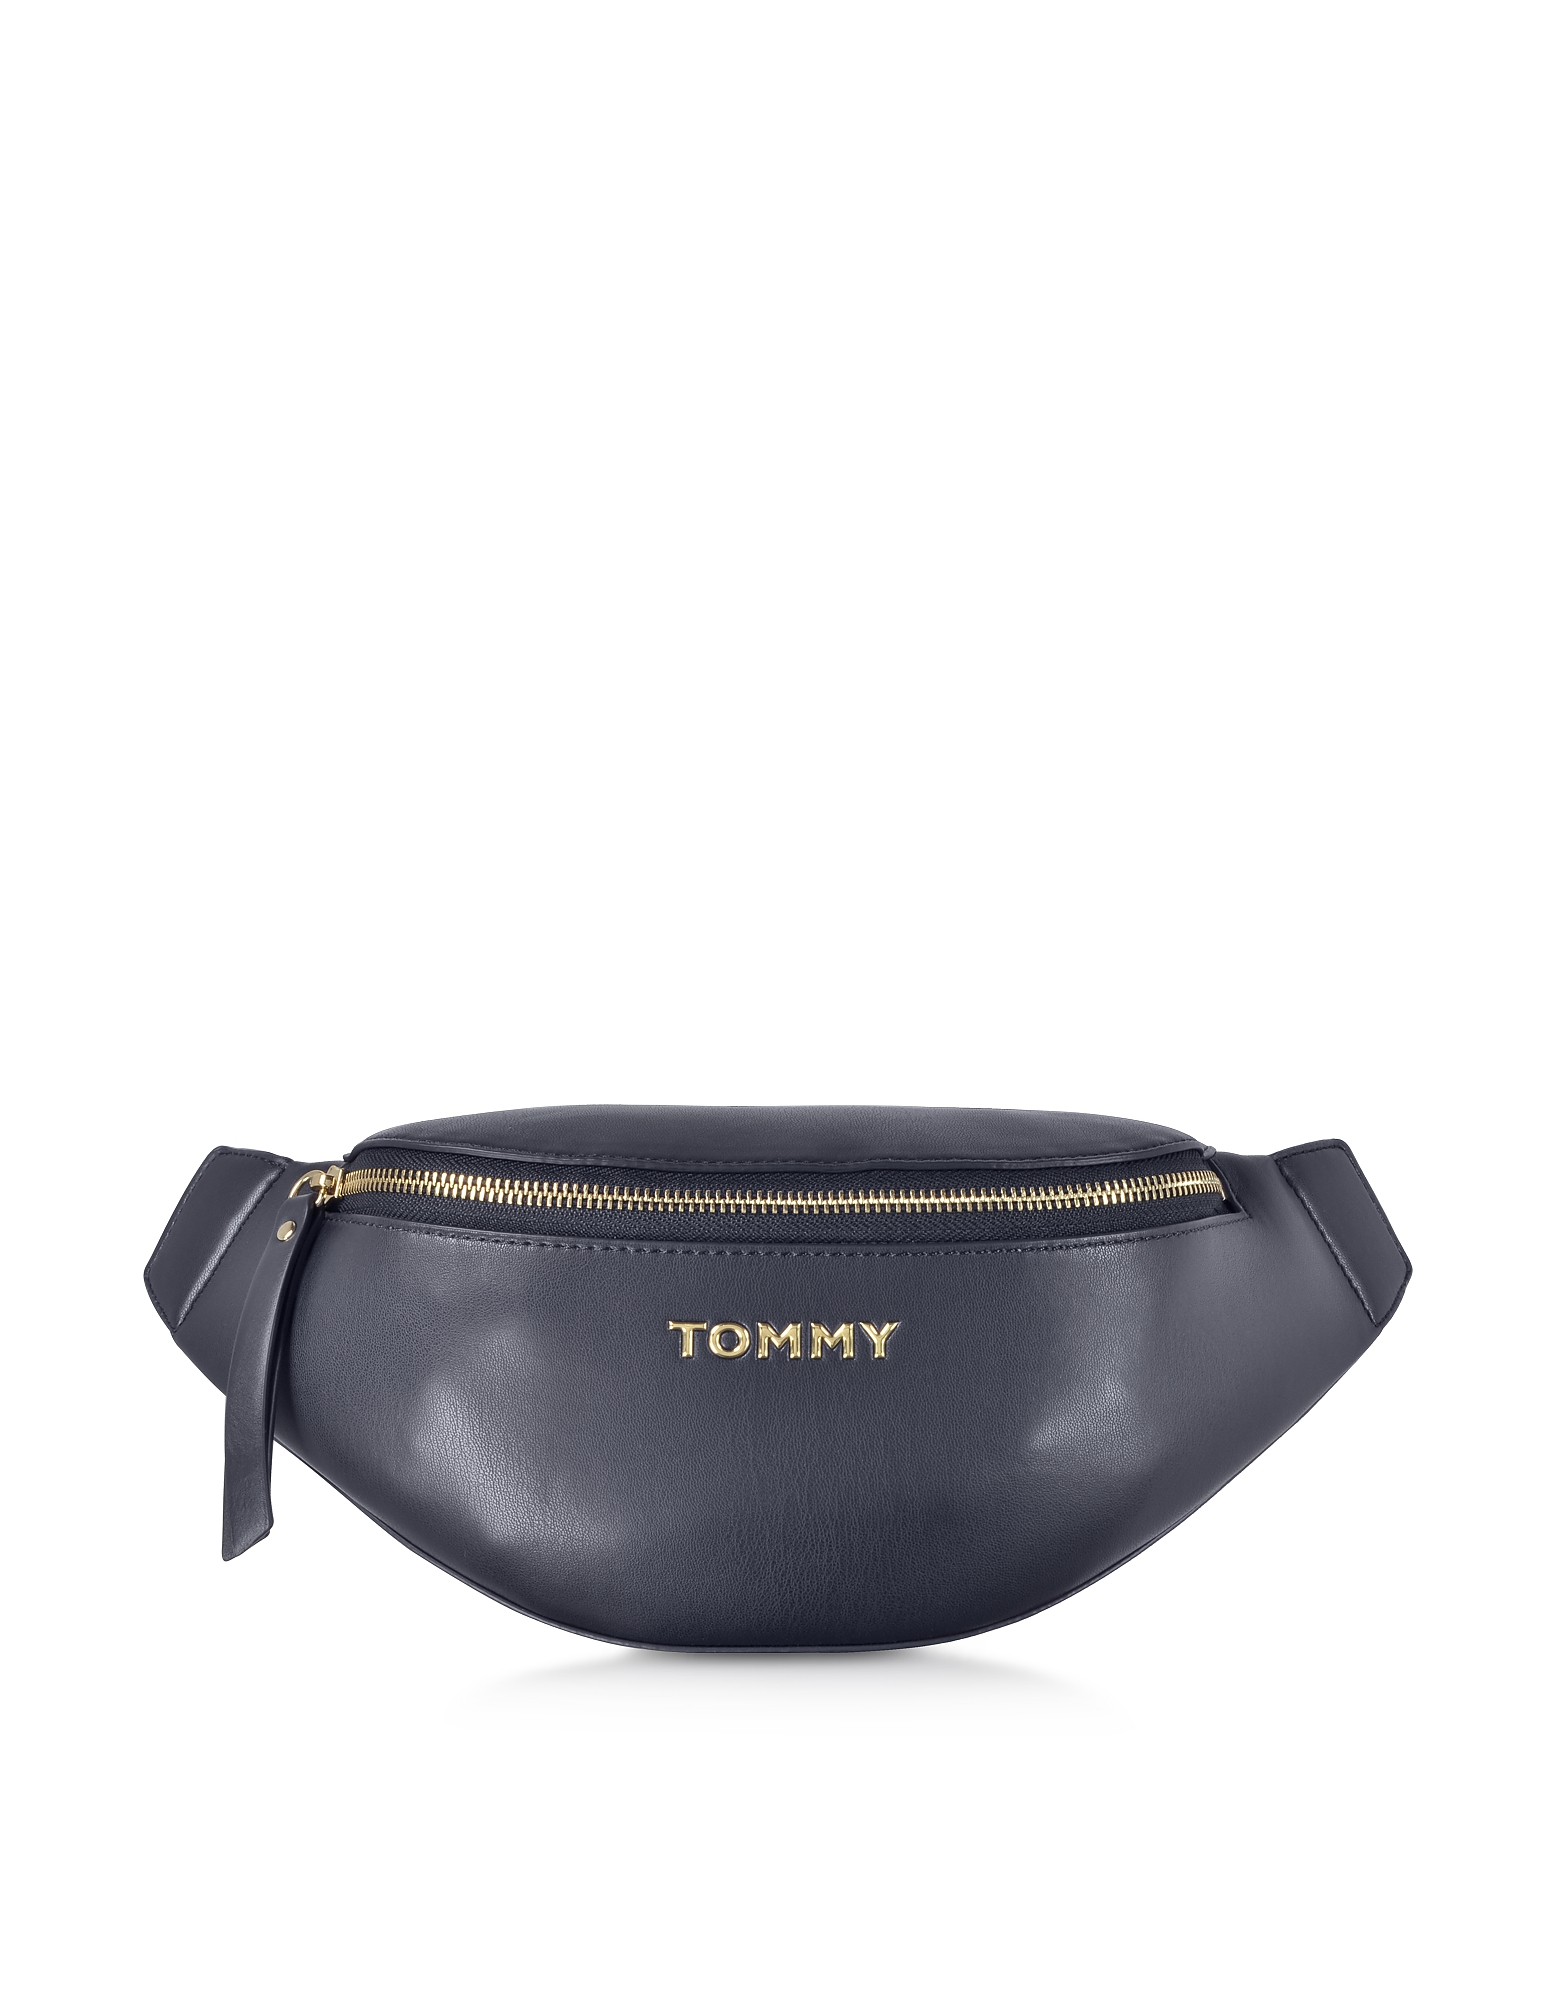 

Iconic Tommy Belt Bag